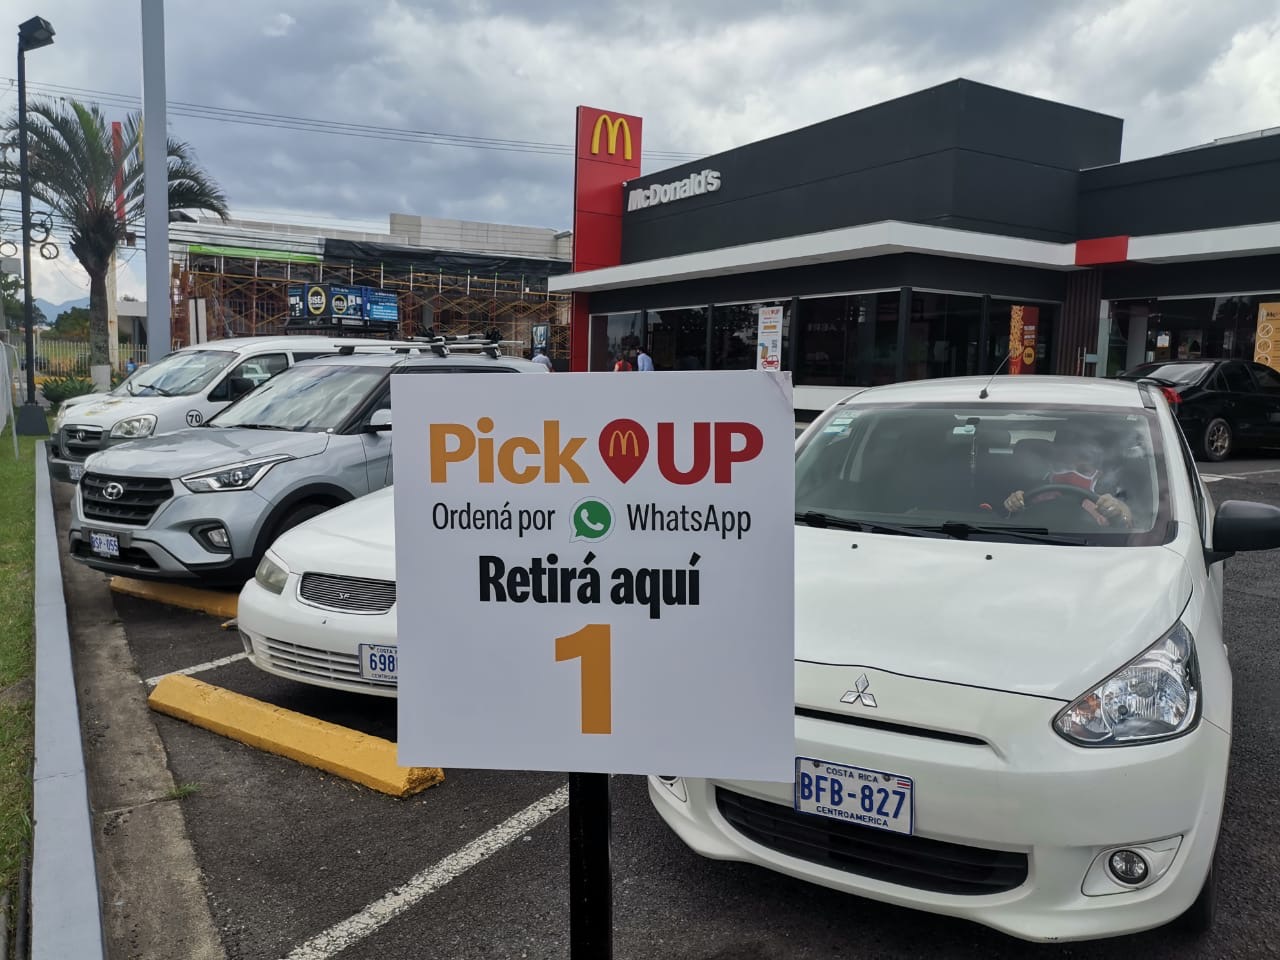 [Costa Rica] McDonald’s incorpora nuevo sistema de Pick Up para retirar en el área de parqueo sin bajarse del vehículo